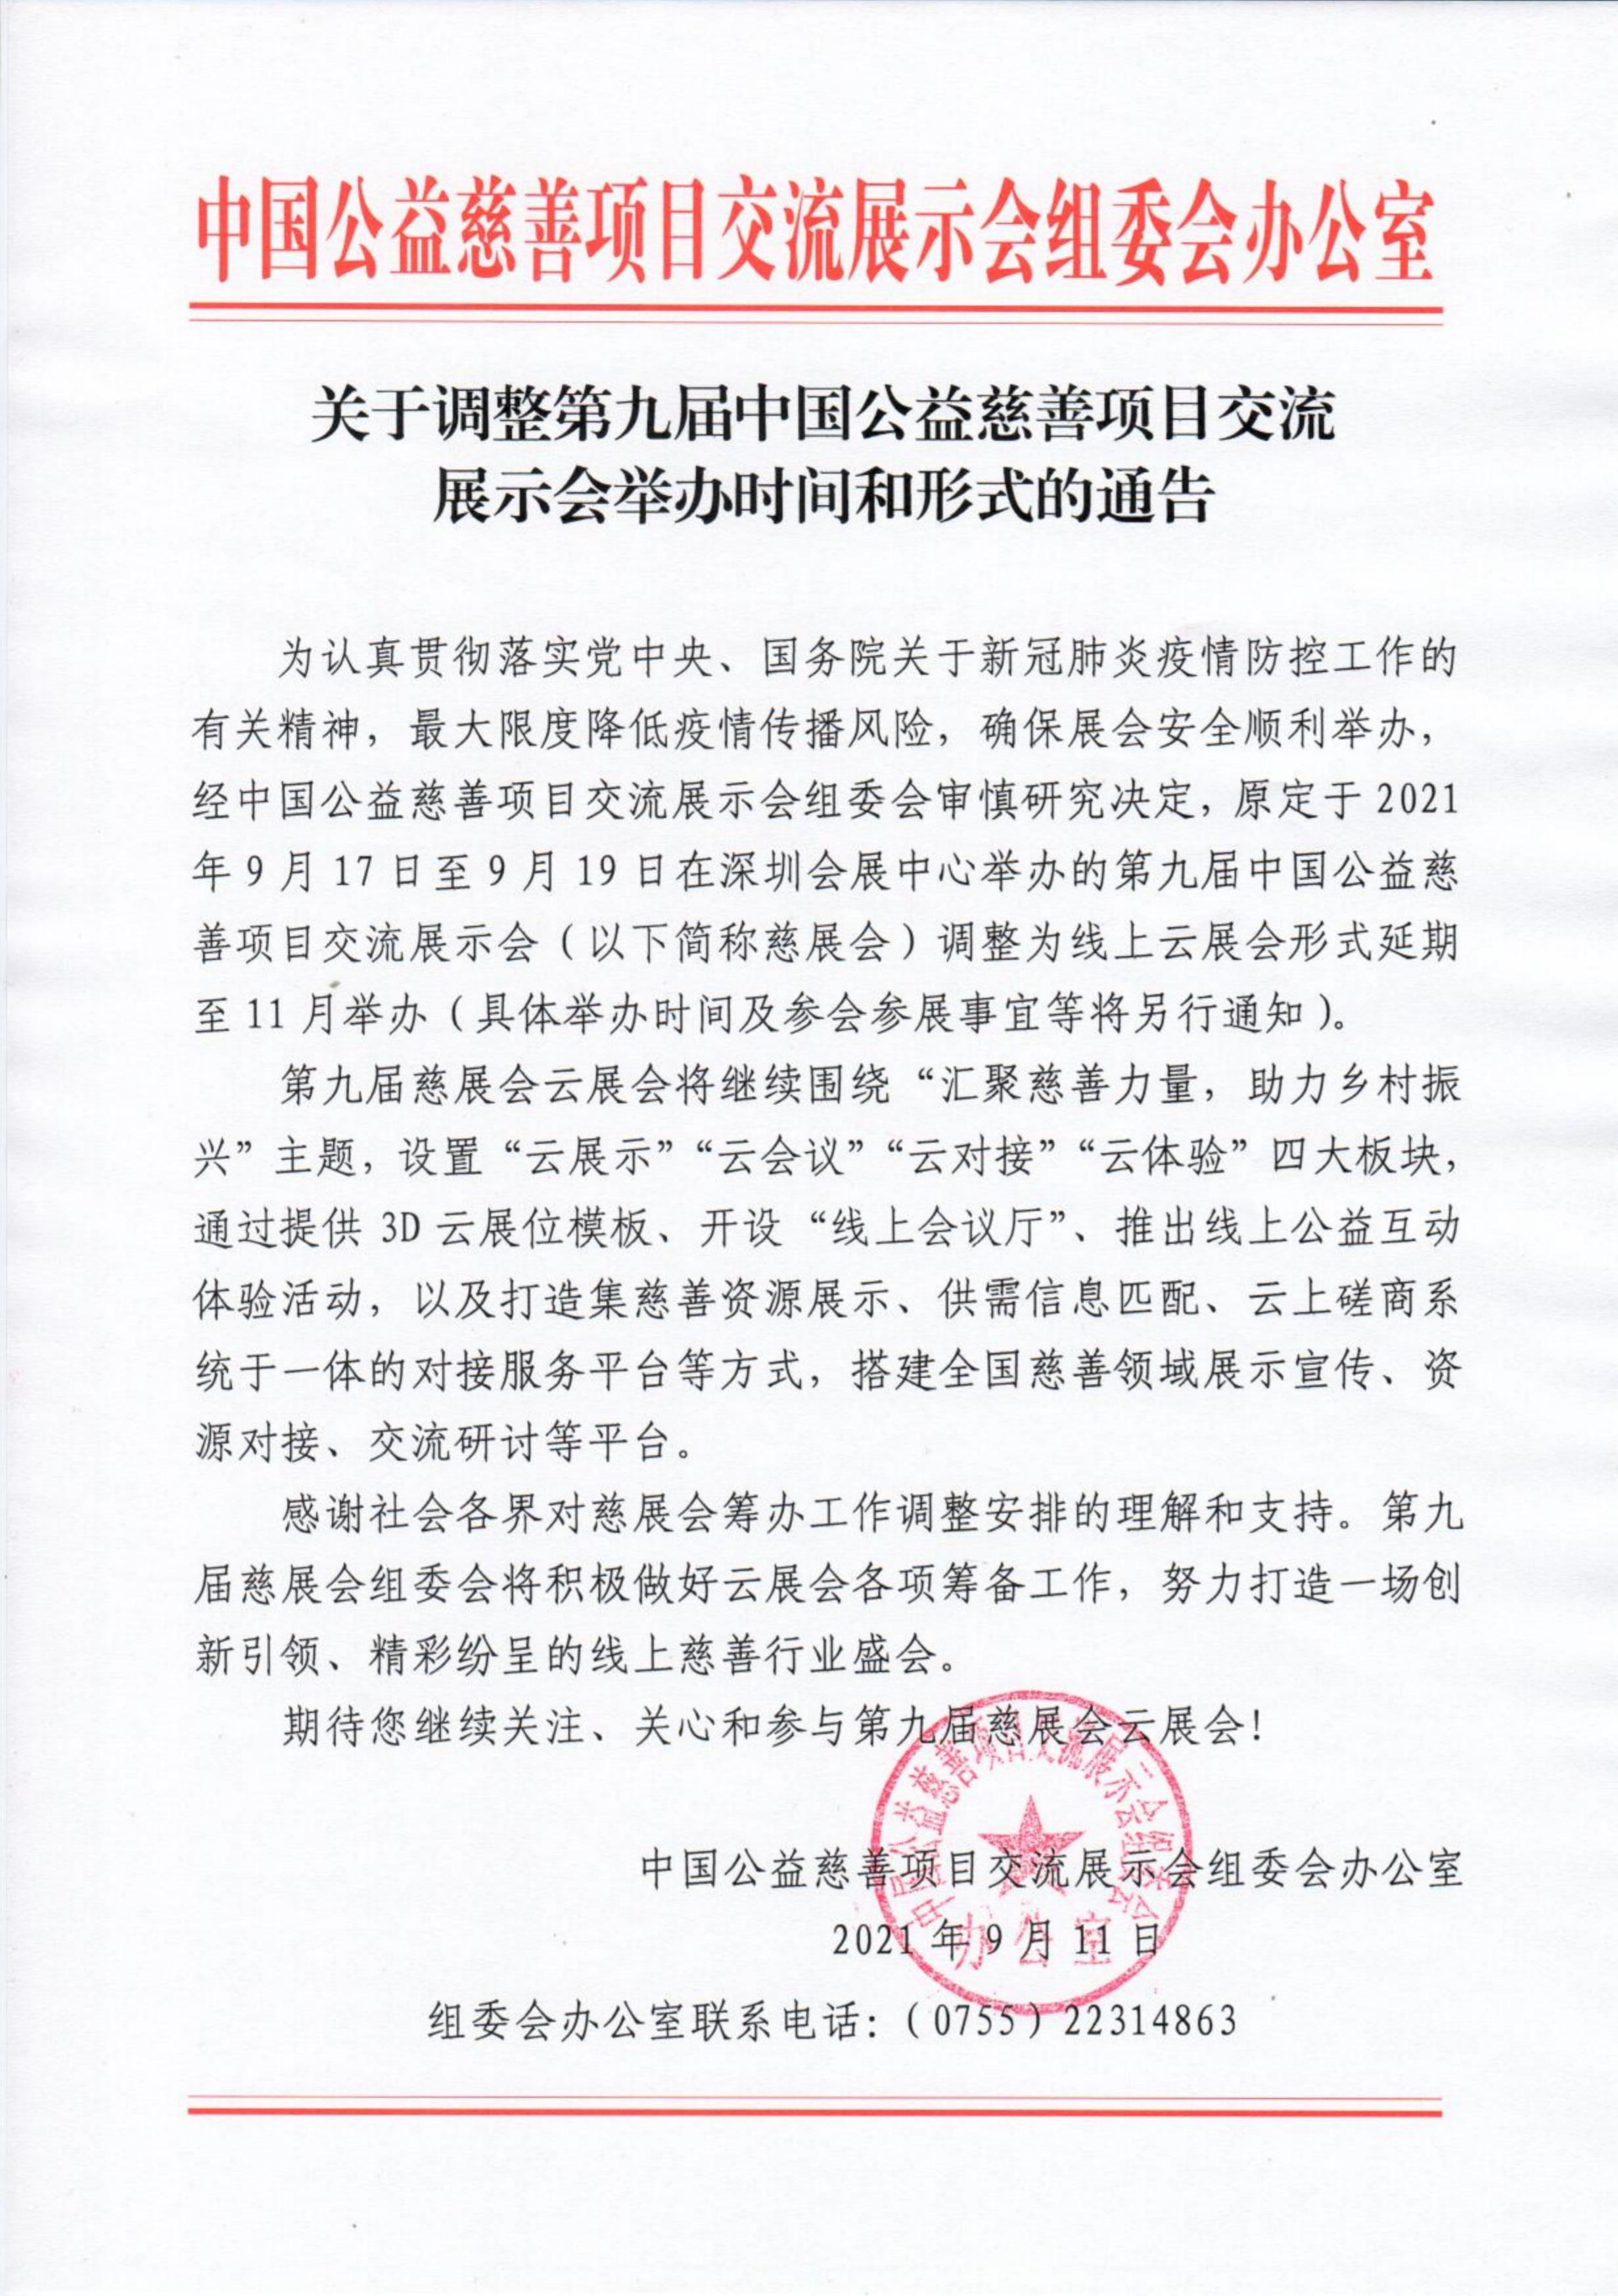 【0911】关于调整第九届中国公益慈善项目交流展示会举办时间和形式的通告_00.jpg